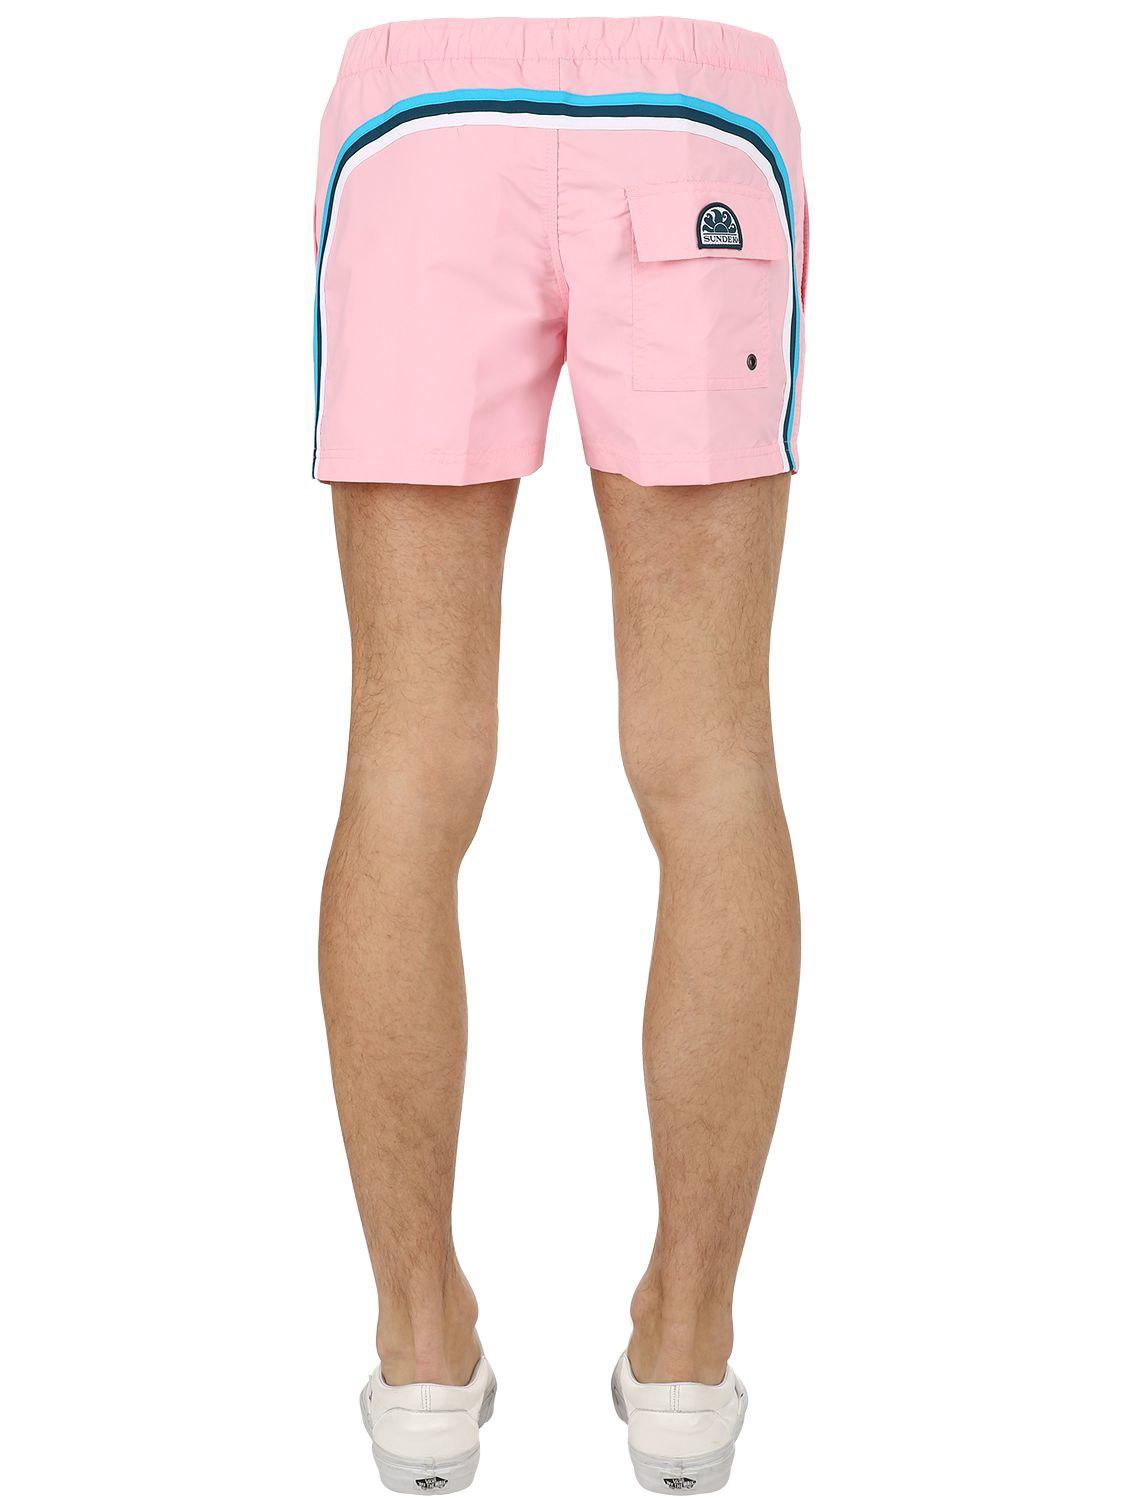 Sundek Synthetic "13"" Nylon Swim Shorts" in Pink for Men - Lyst